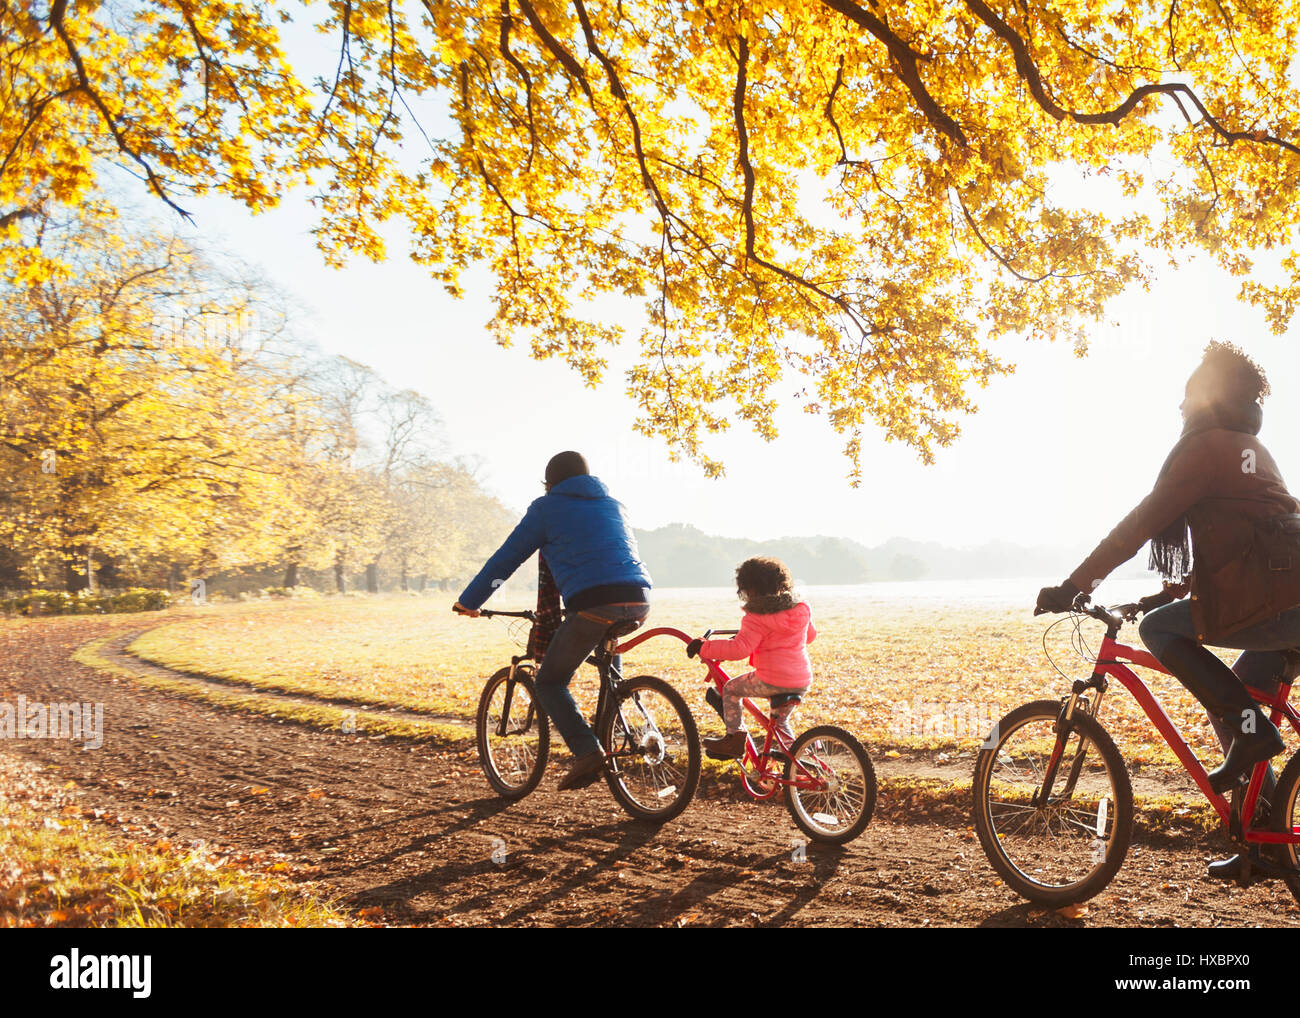 Junge Familie Radfahren auf Weg in sonnigen herbstlichen Wälder Stockfoto